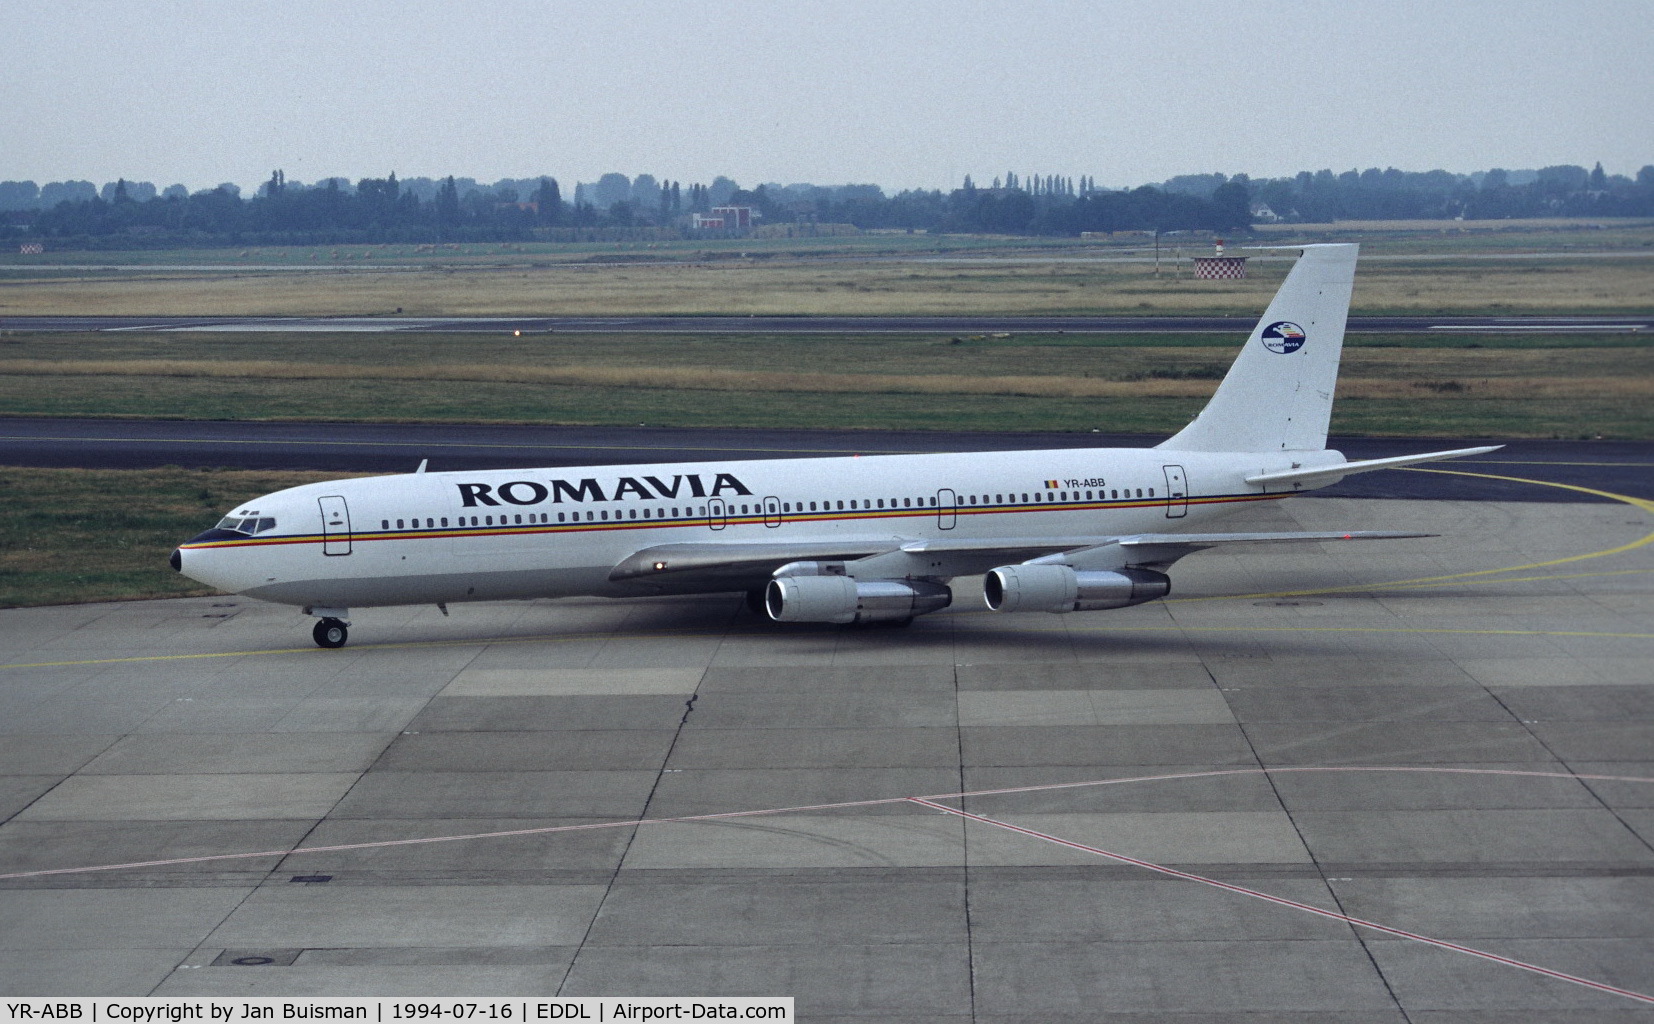 YR-ABB, 1974 Boeing 707-3K1C C/N 20804, Romavia